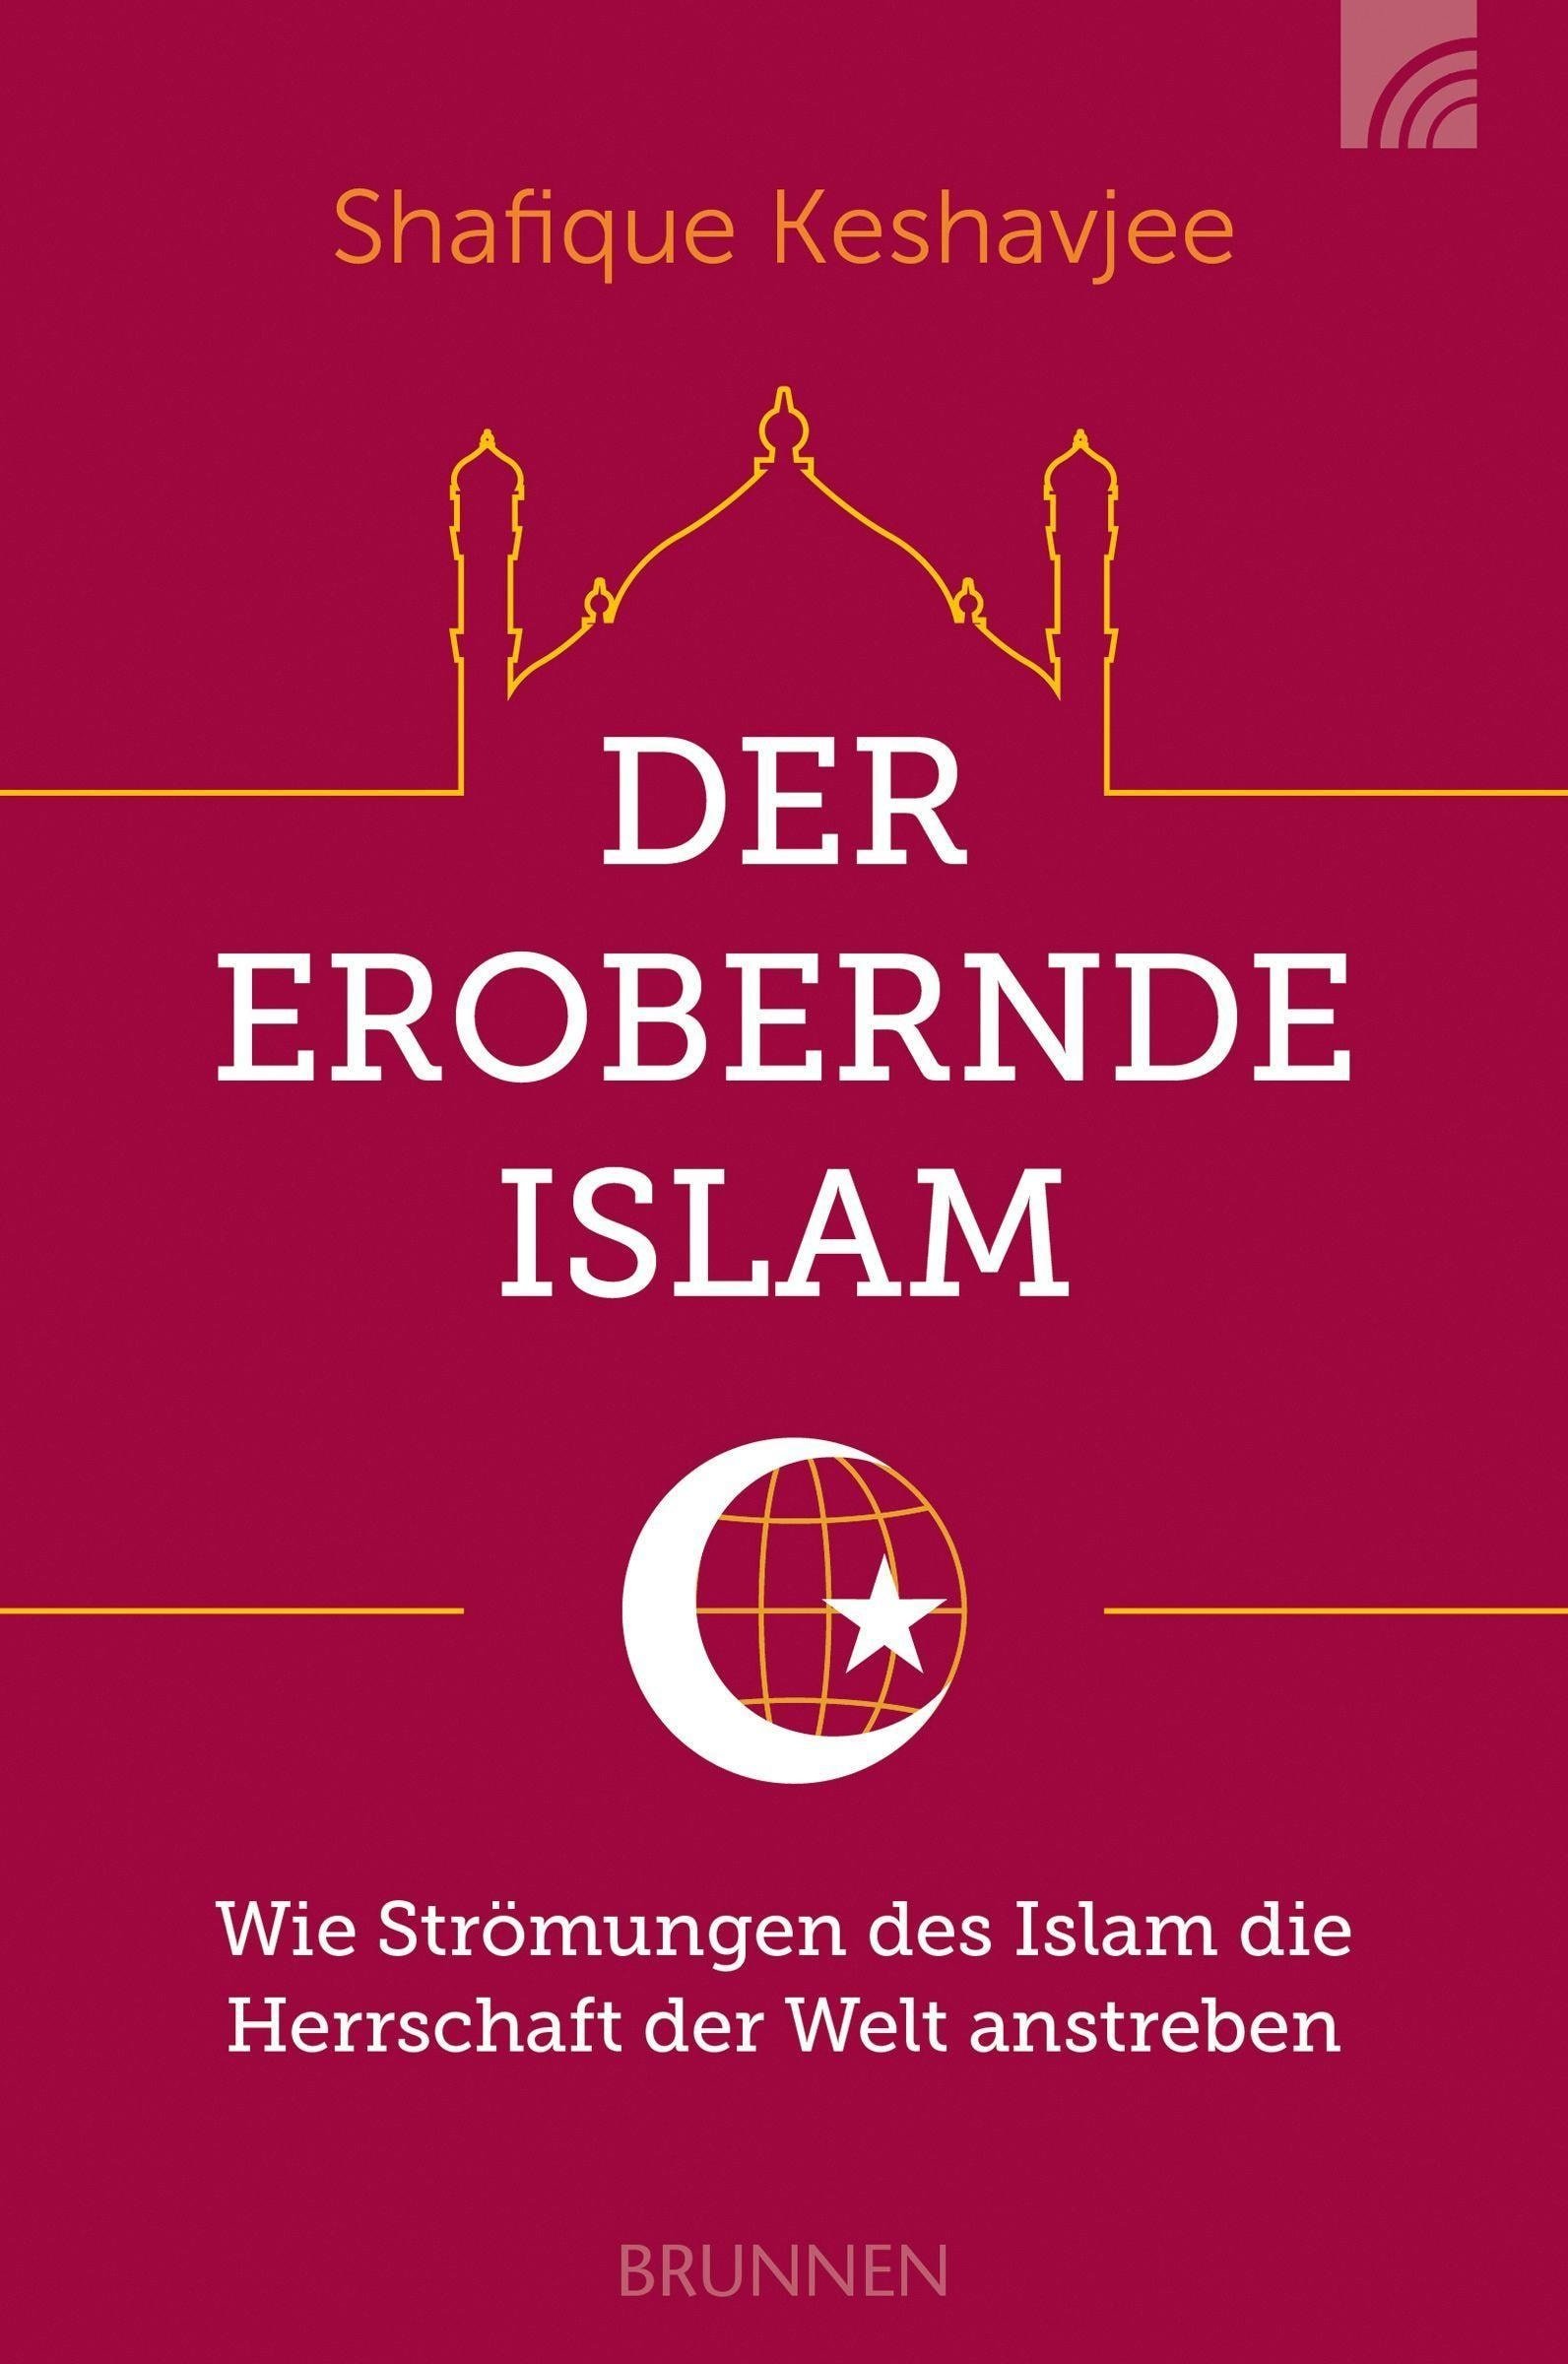 Der erobernde Islam, Sachbücher von Shafique Keshavjee